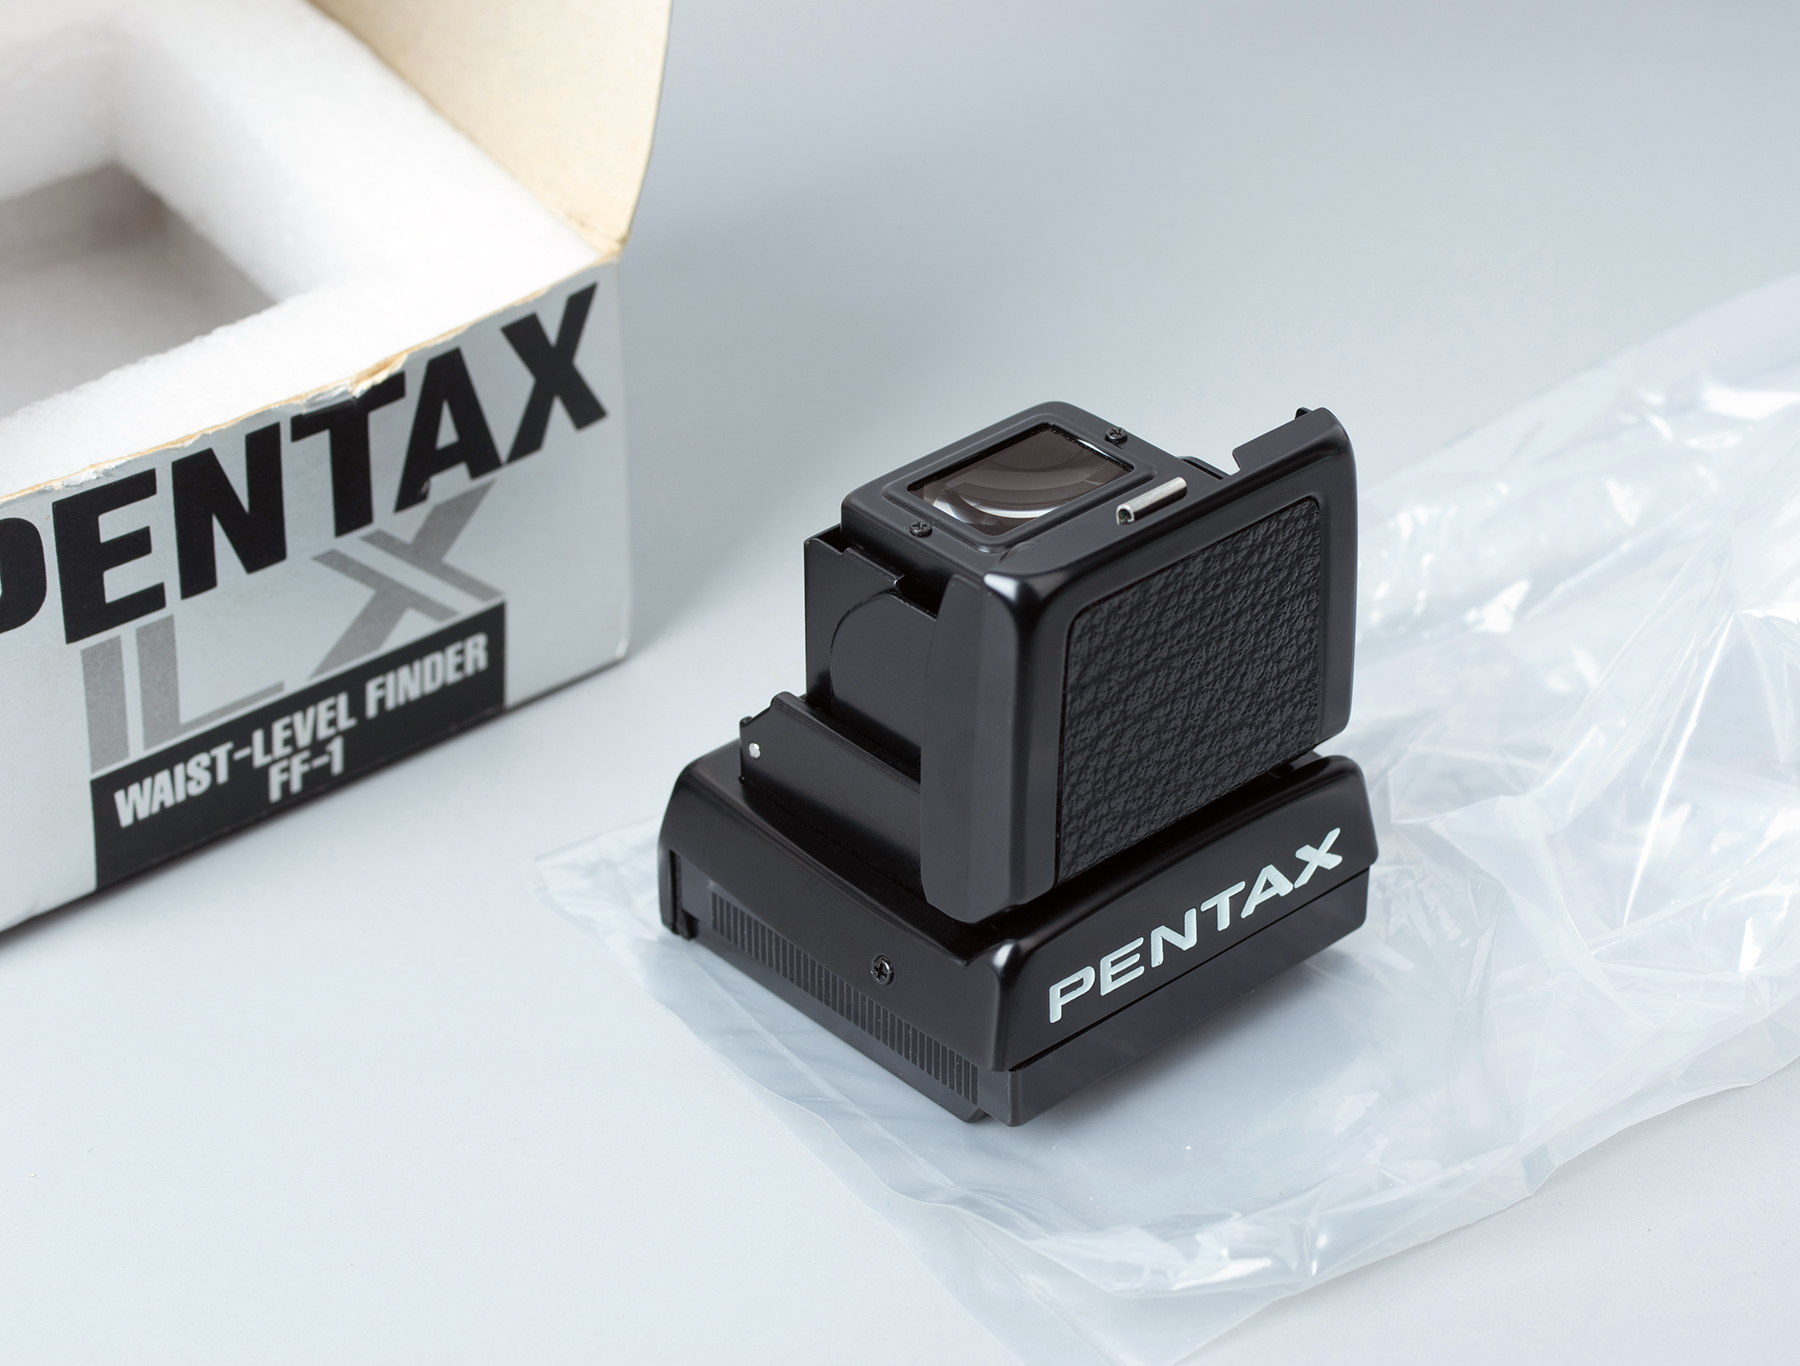 日本进口宾得PENTAX LX原装机顶取景器 腰平取景器 FF-1稀有配件